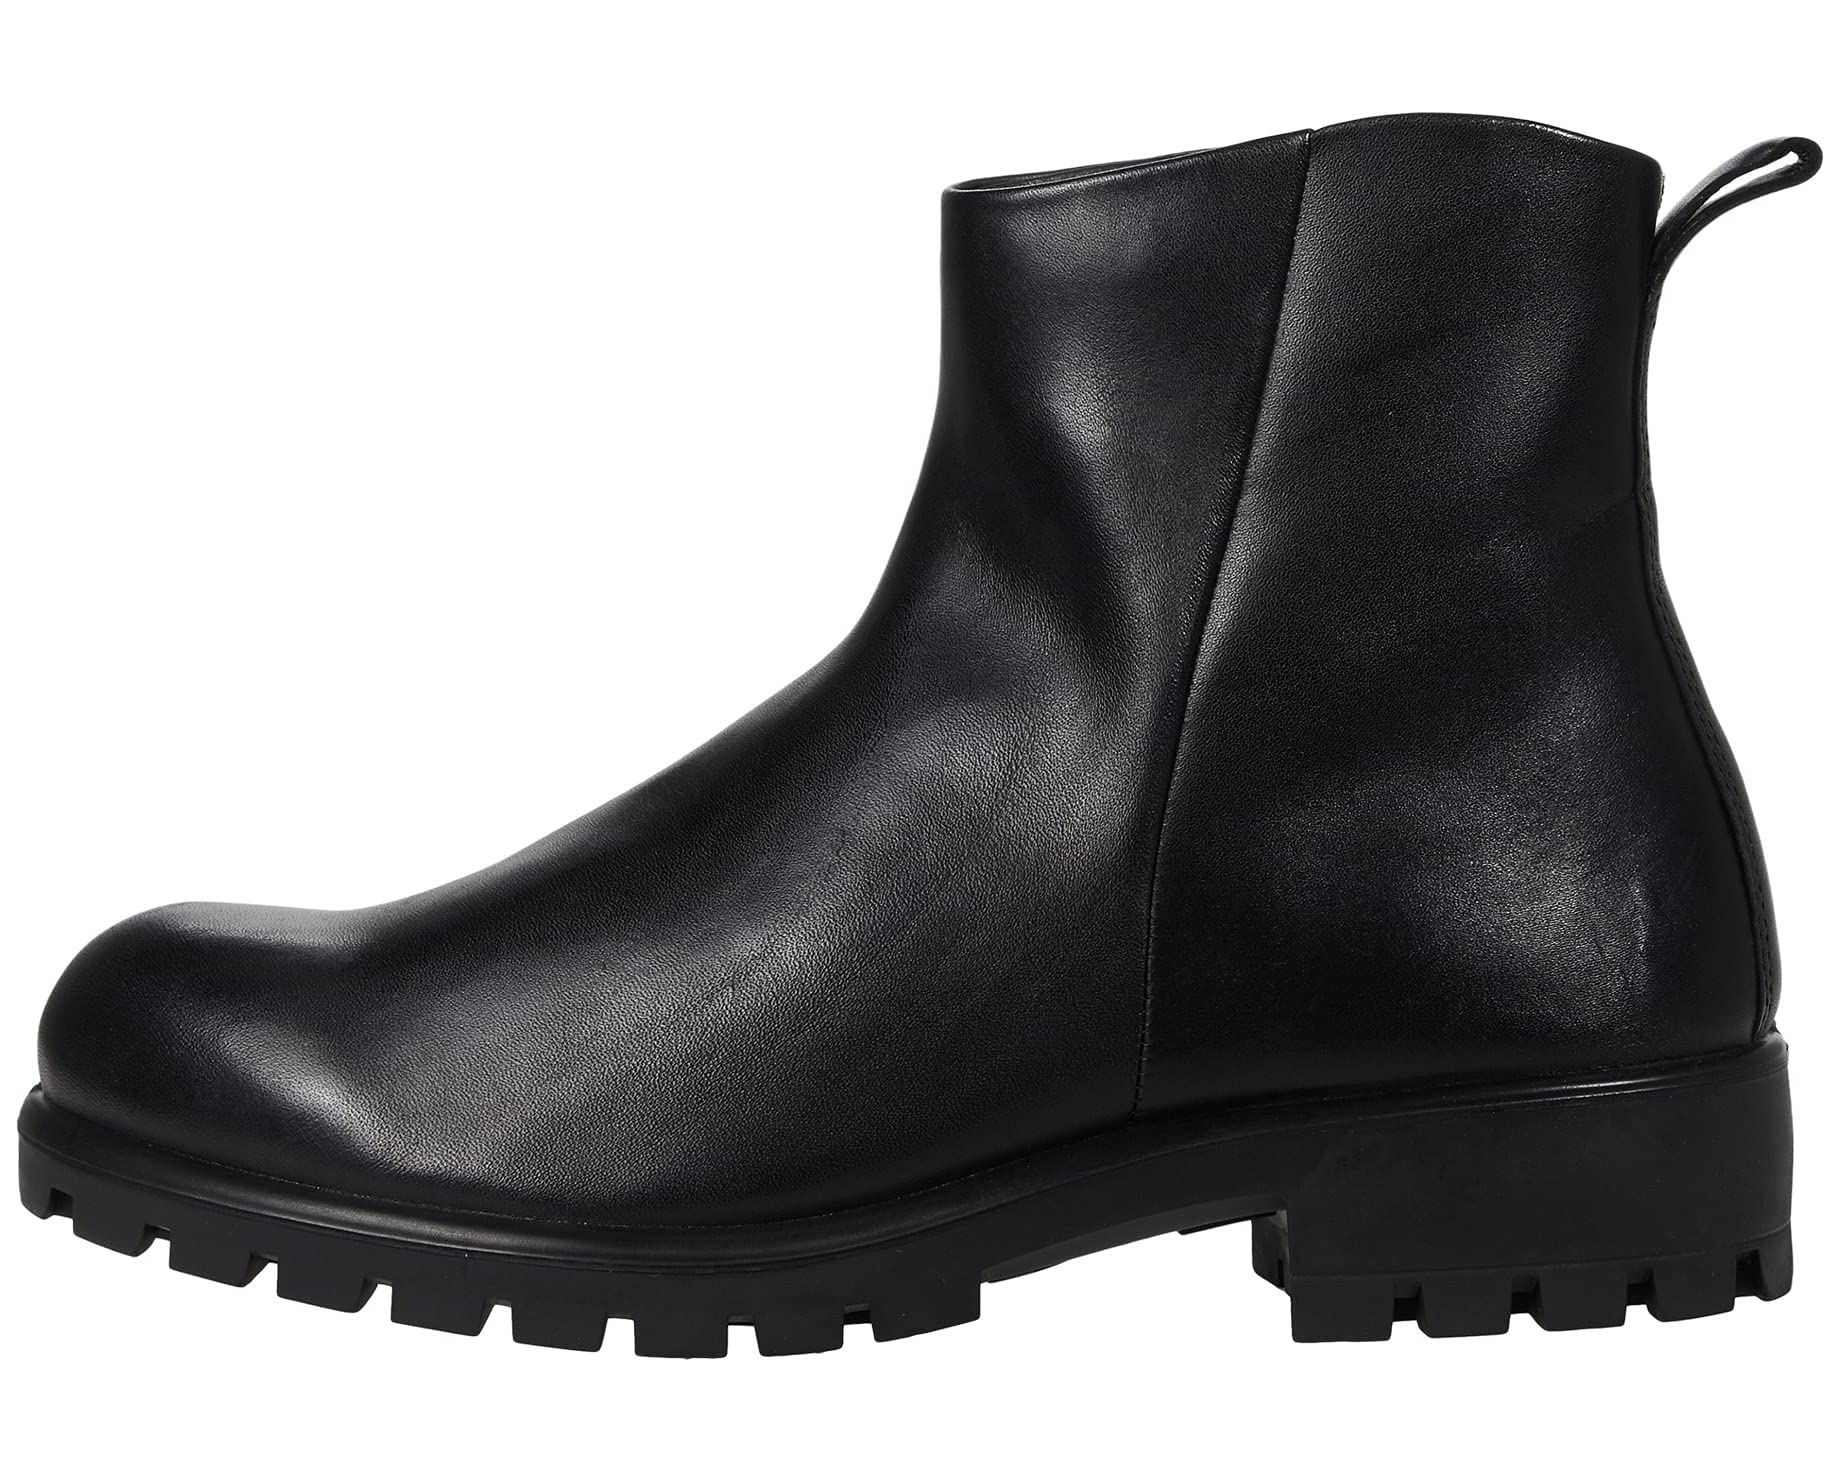 Ботинки Modtray Hydromax Ankle Boot ECCO, черный ботинки высокие ecco modtray w темно коричневый 37 размер